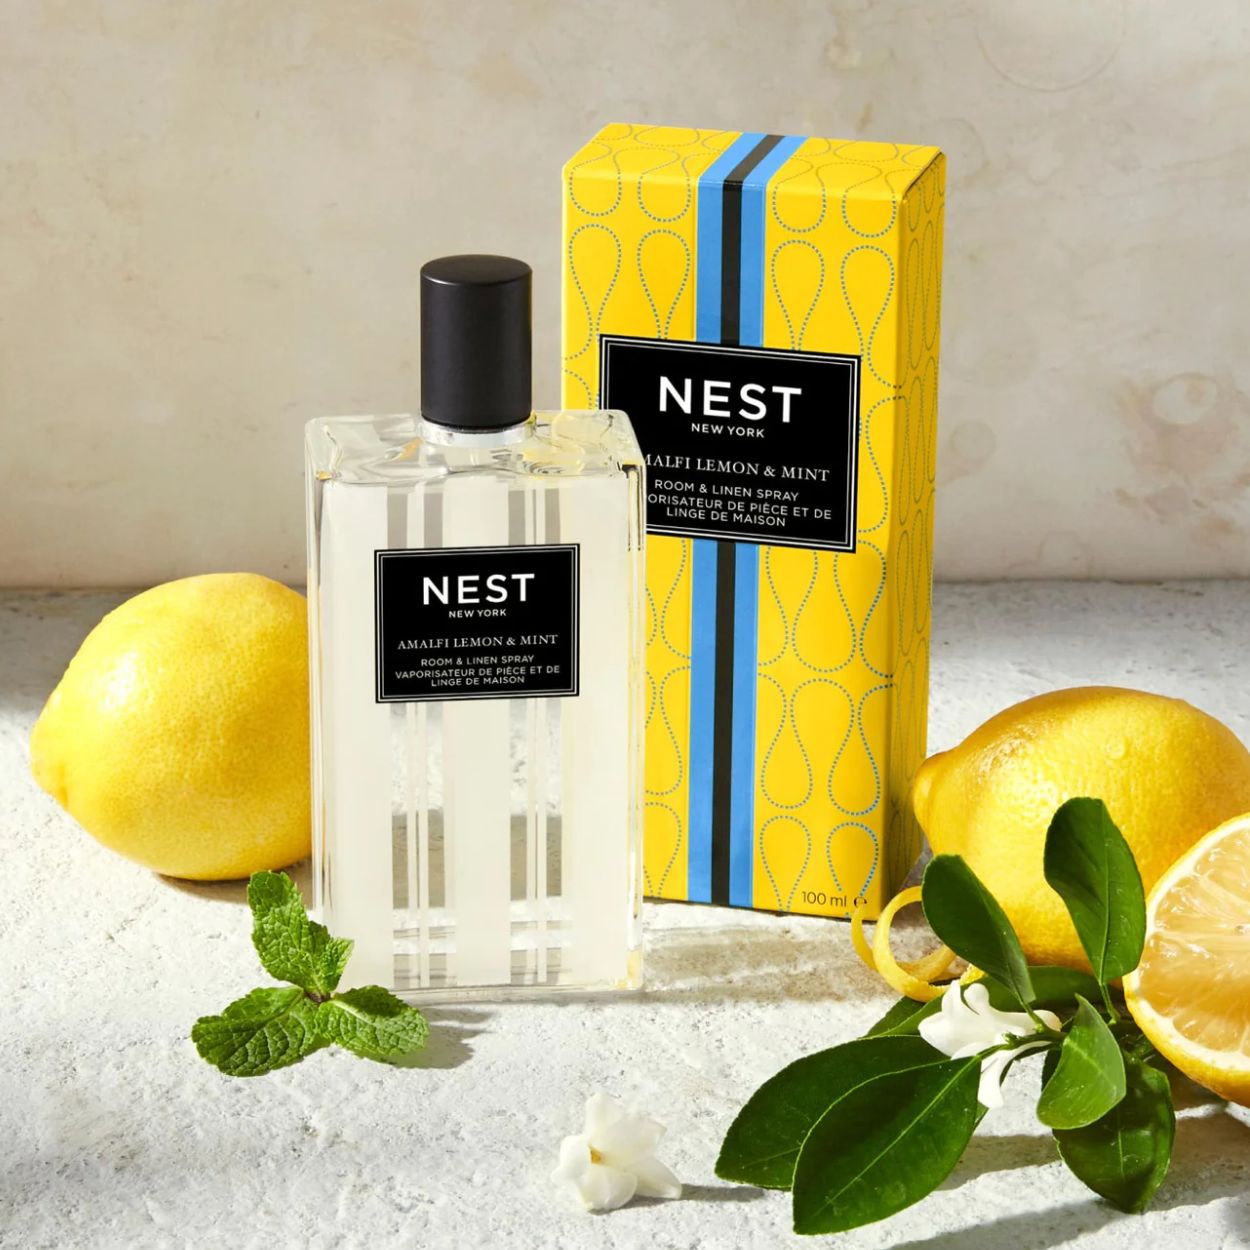 Amalfi Lemon and Mint Room and Linen Spray